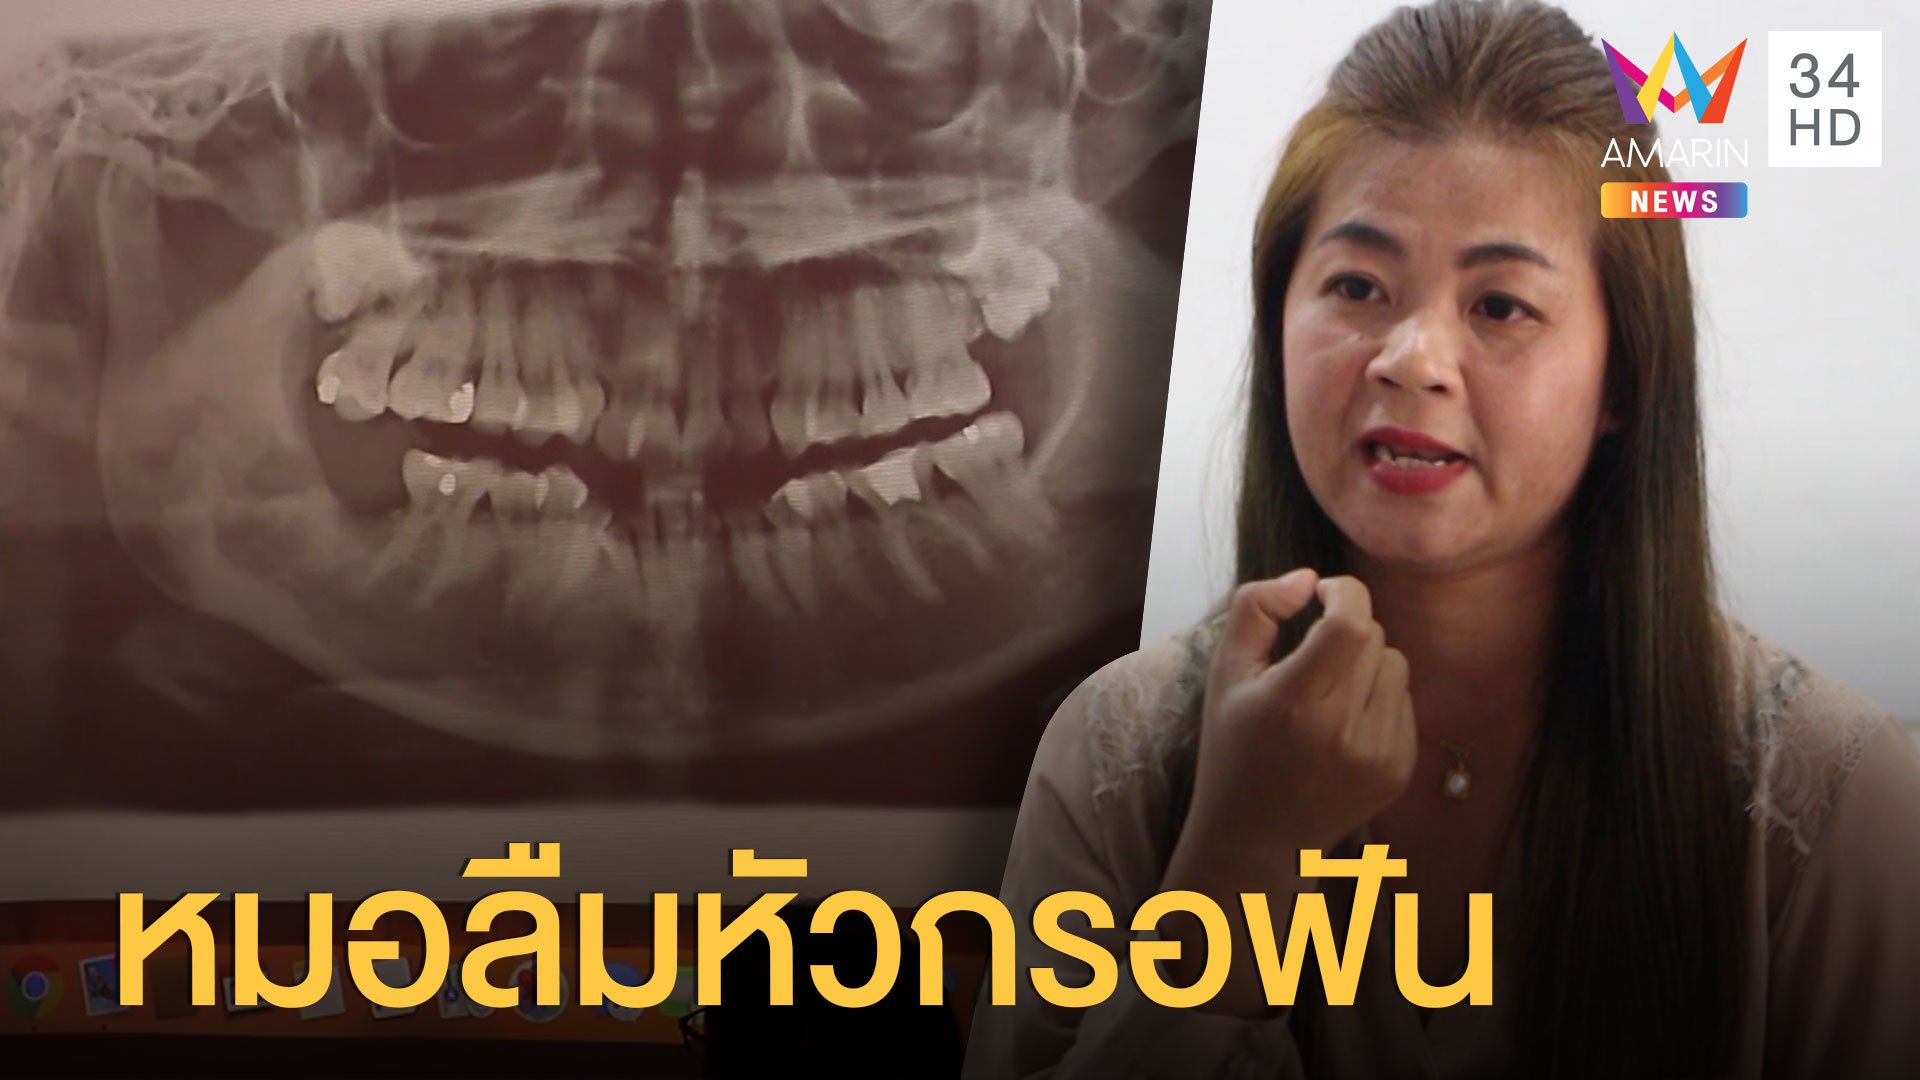 หมอลืมหัวกรอฟันไว้ในปาก 5 ปีเต็ม กระทบชีวิตหนัก | ข่าวอรุณอมรินทร์ | 18 ส.ค. 63 | AMARIN TVHD34